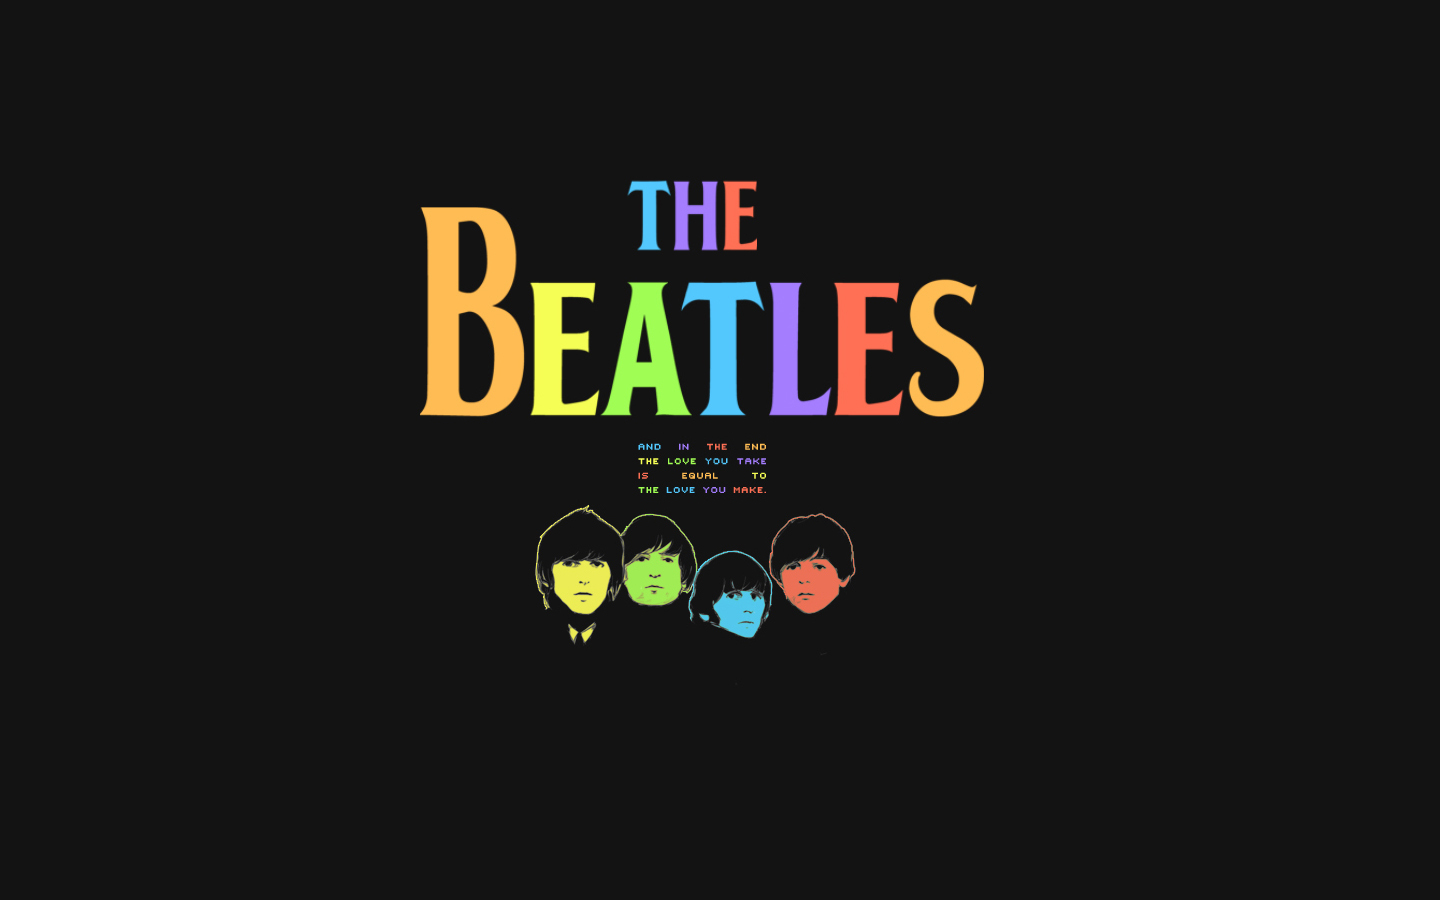 The Beatles the beatles 10561044 1440 900jpg